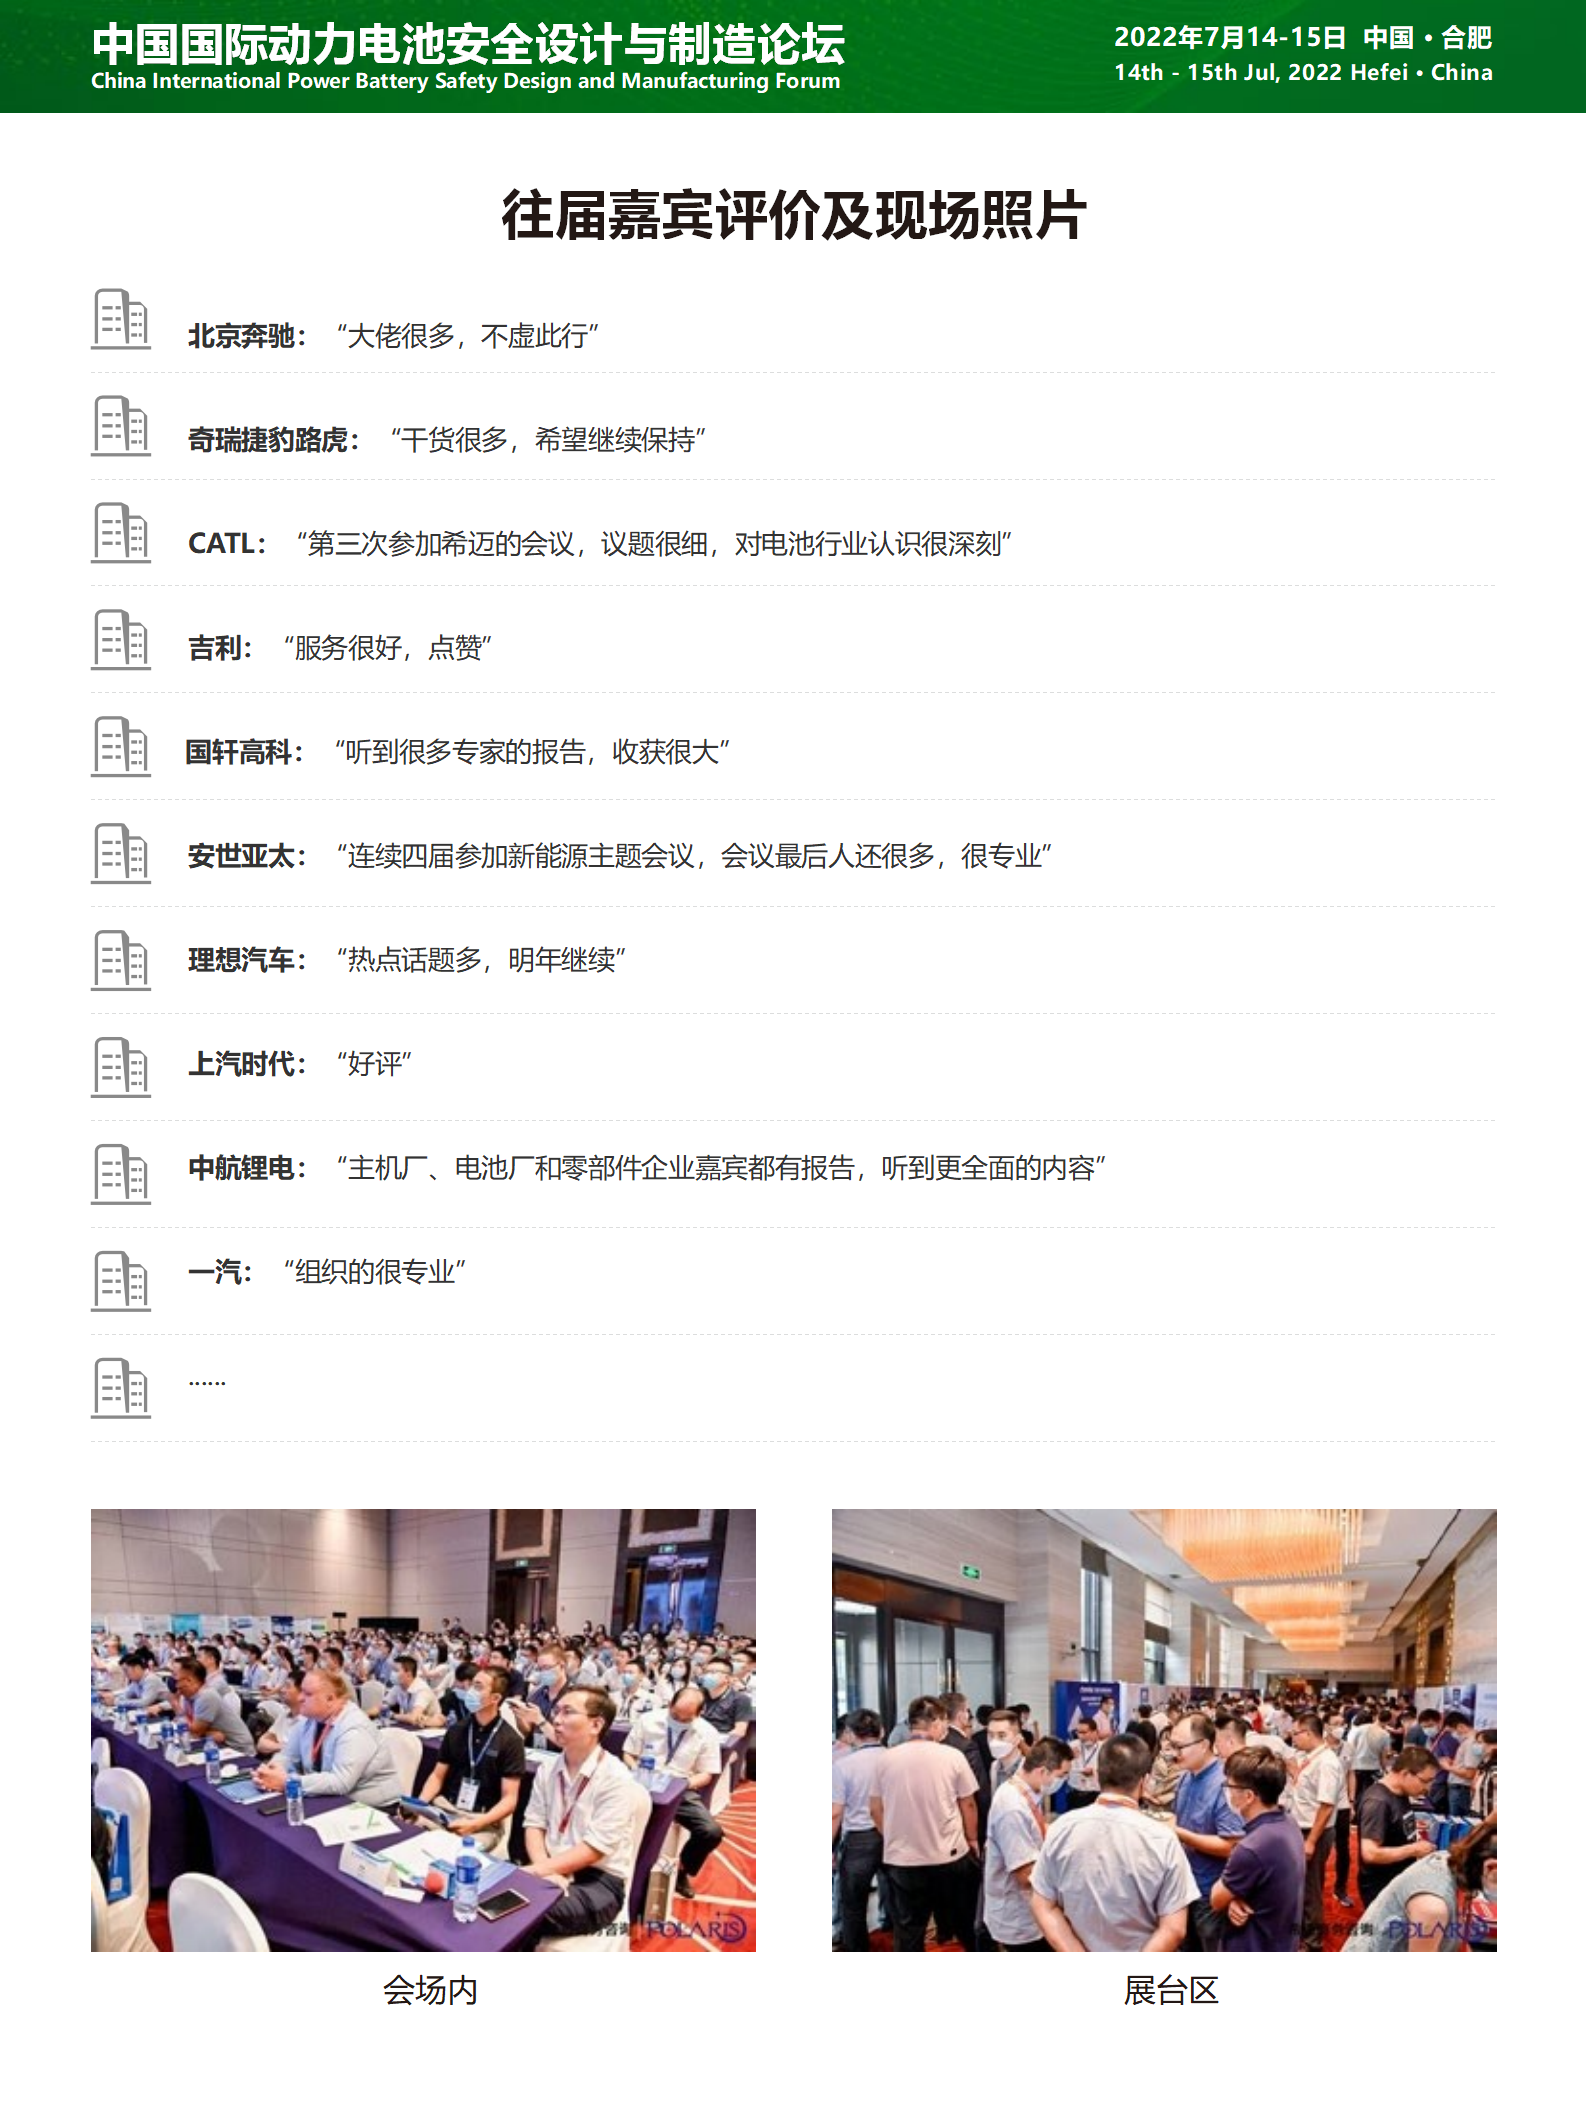 中國國際動力電池安全設計與制造論壇